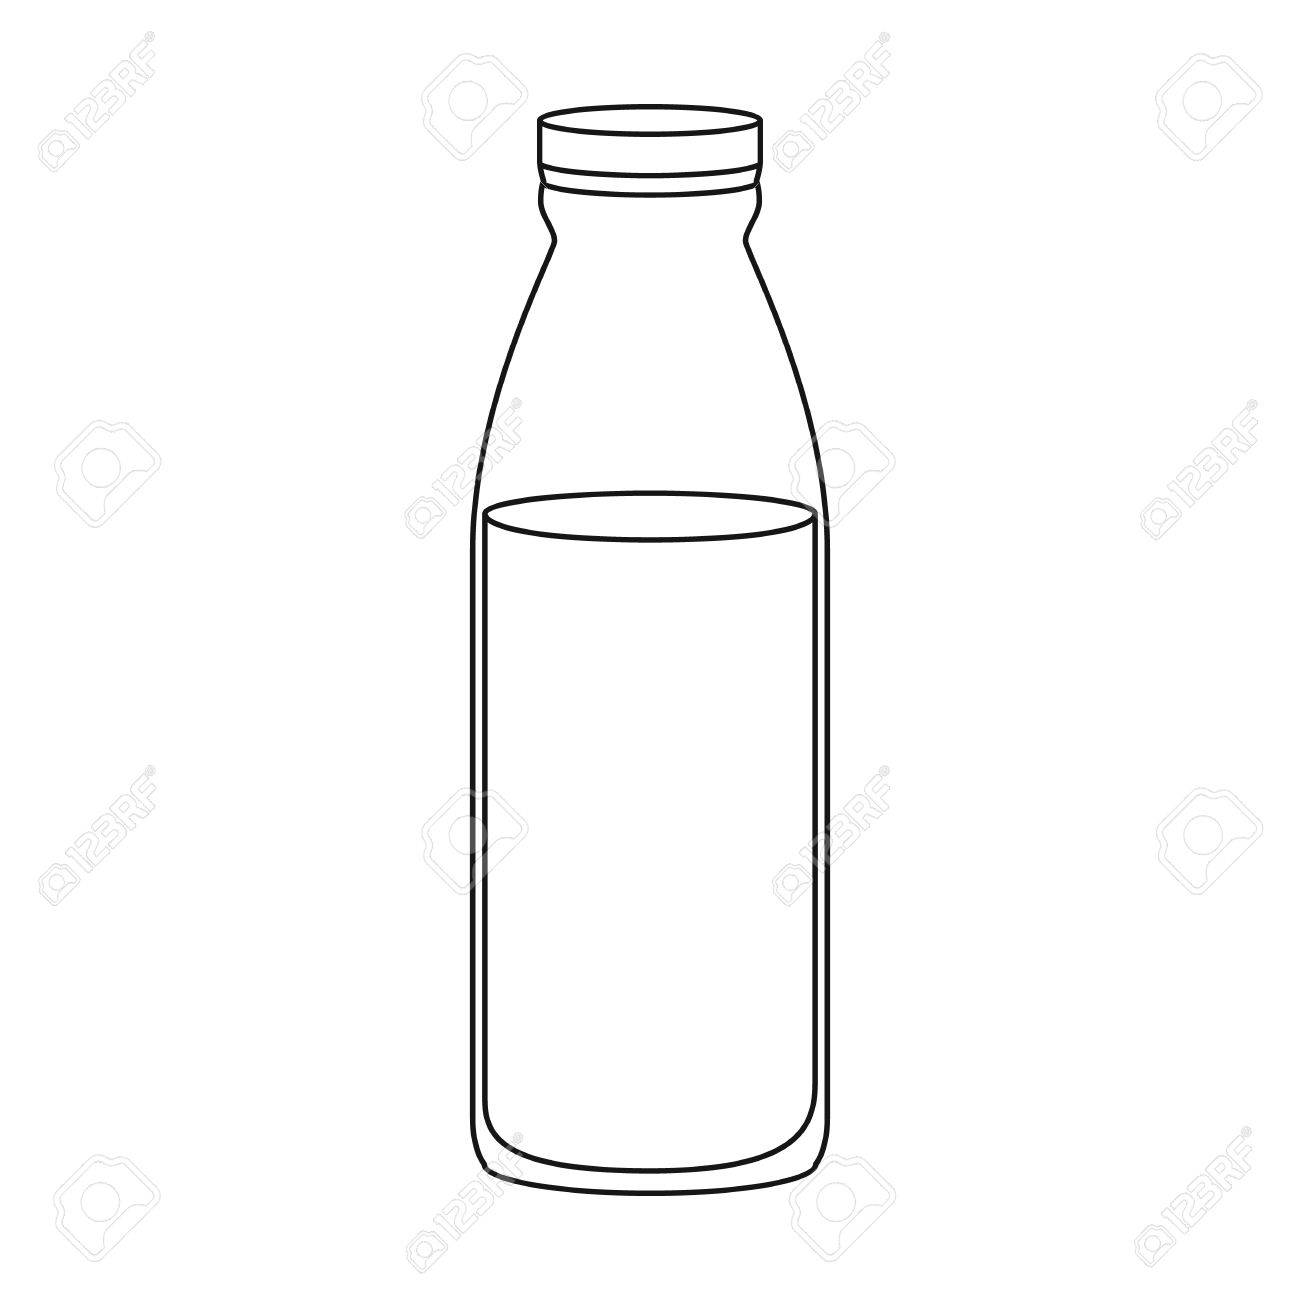 Free Milk Carton Clipart plastic jug, Download Free Clip Art